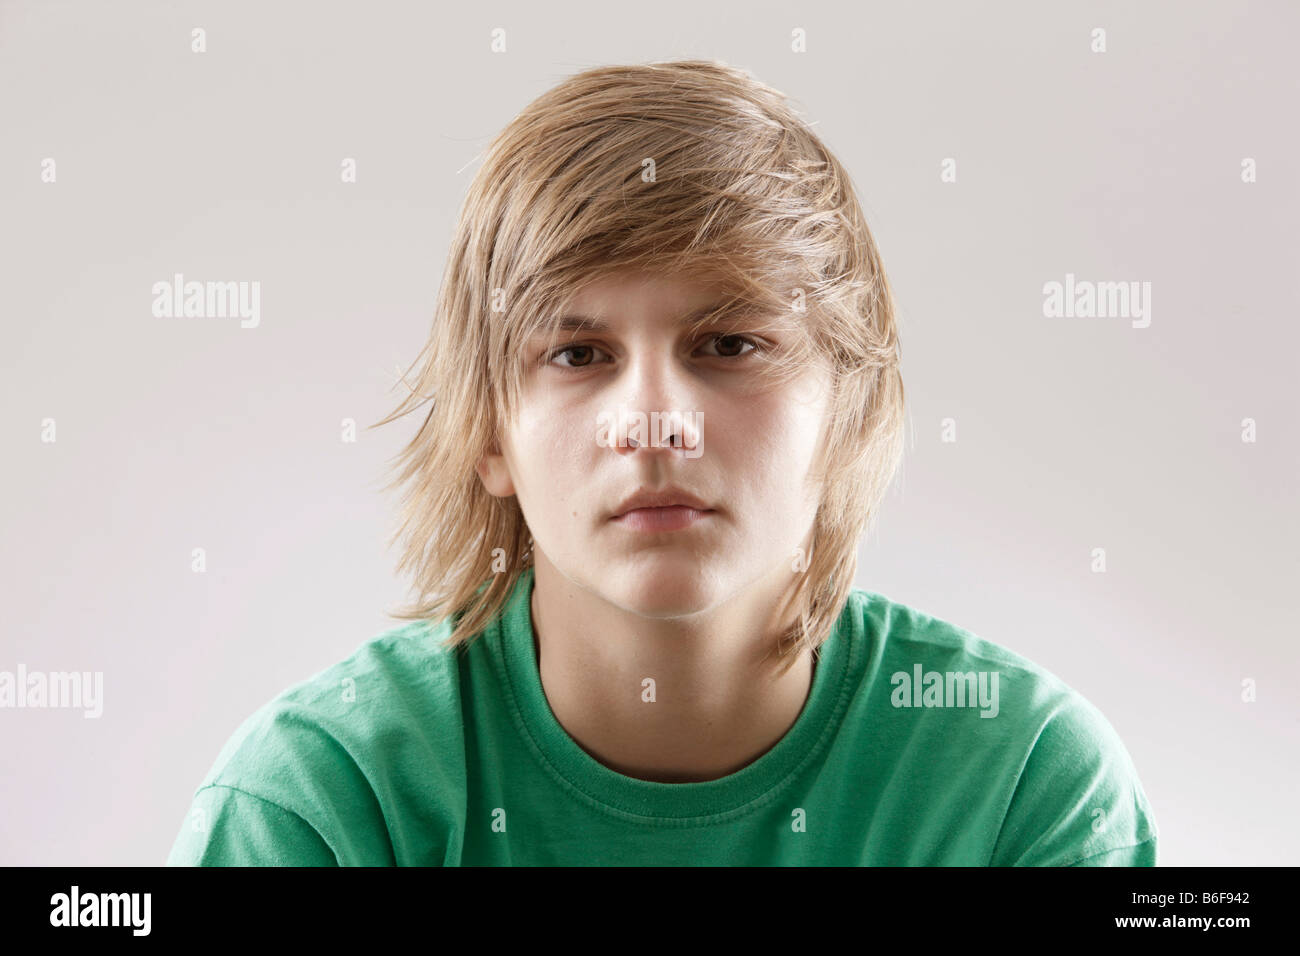 13 jähriger Junge mit einem grünen t-shirt Stockfoto